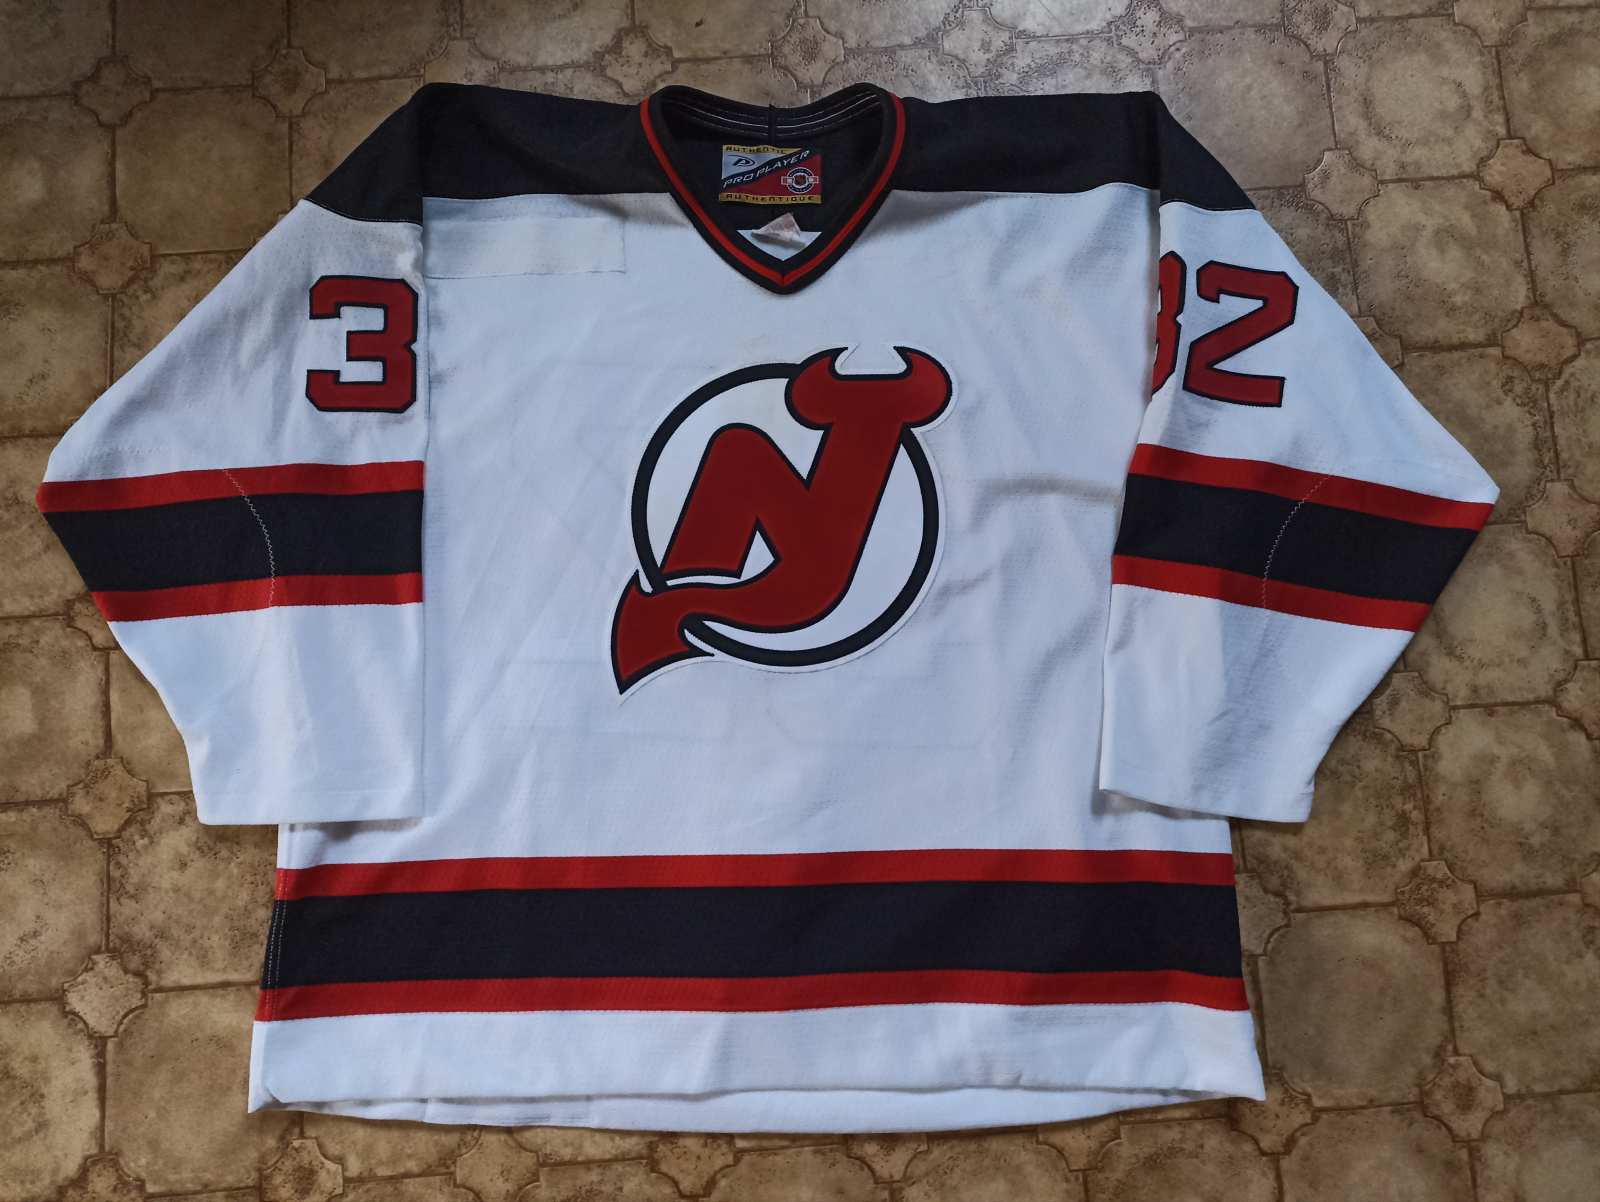 Devils player-worn jersey